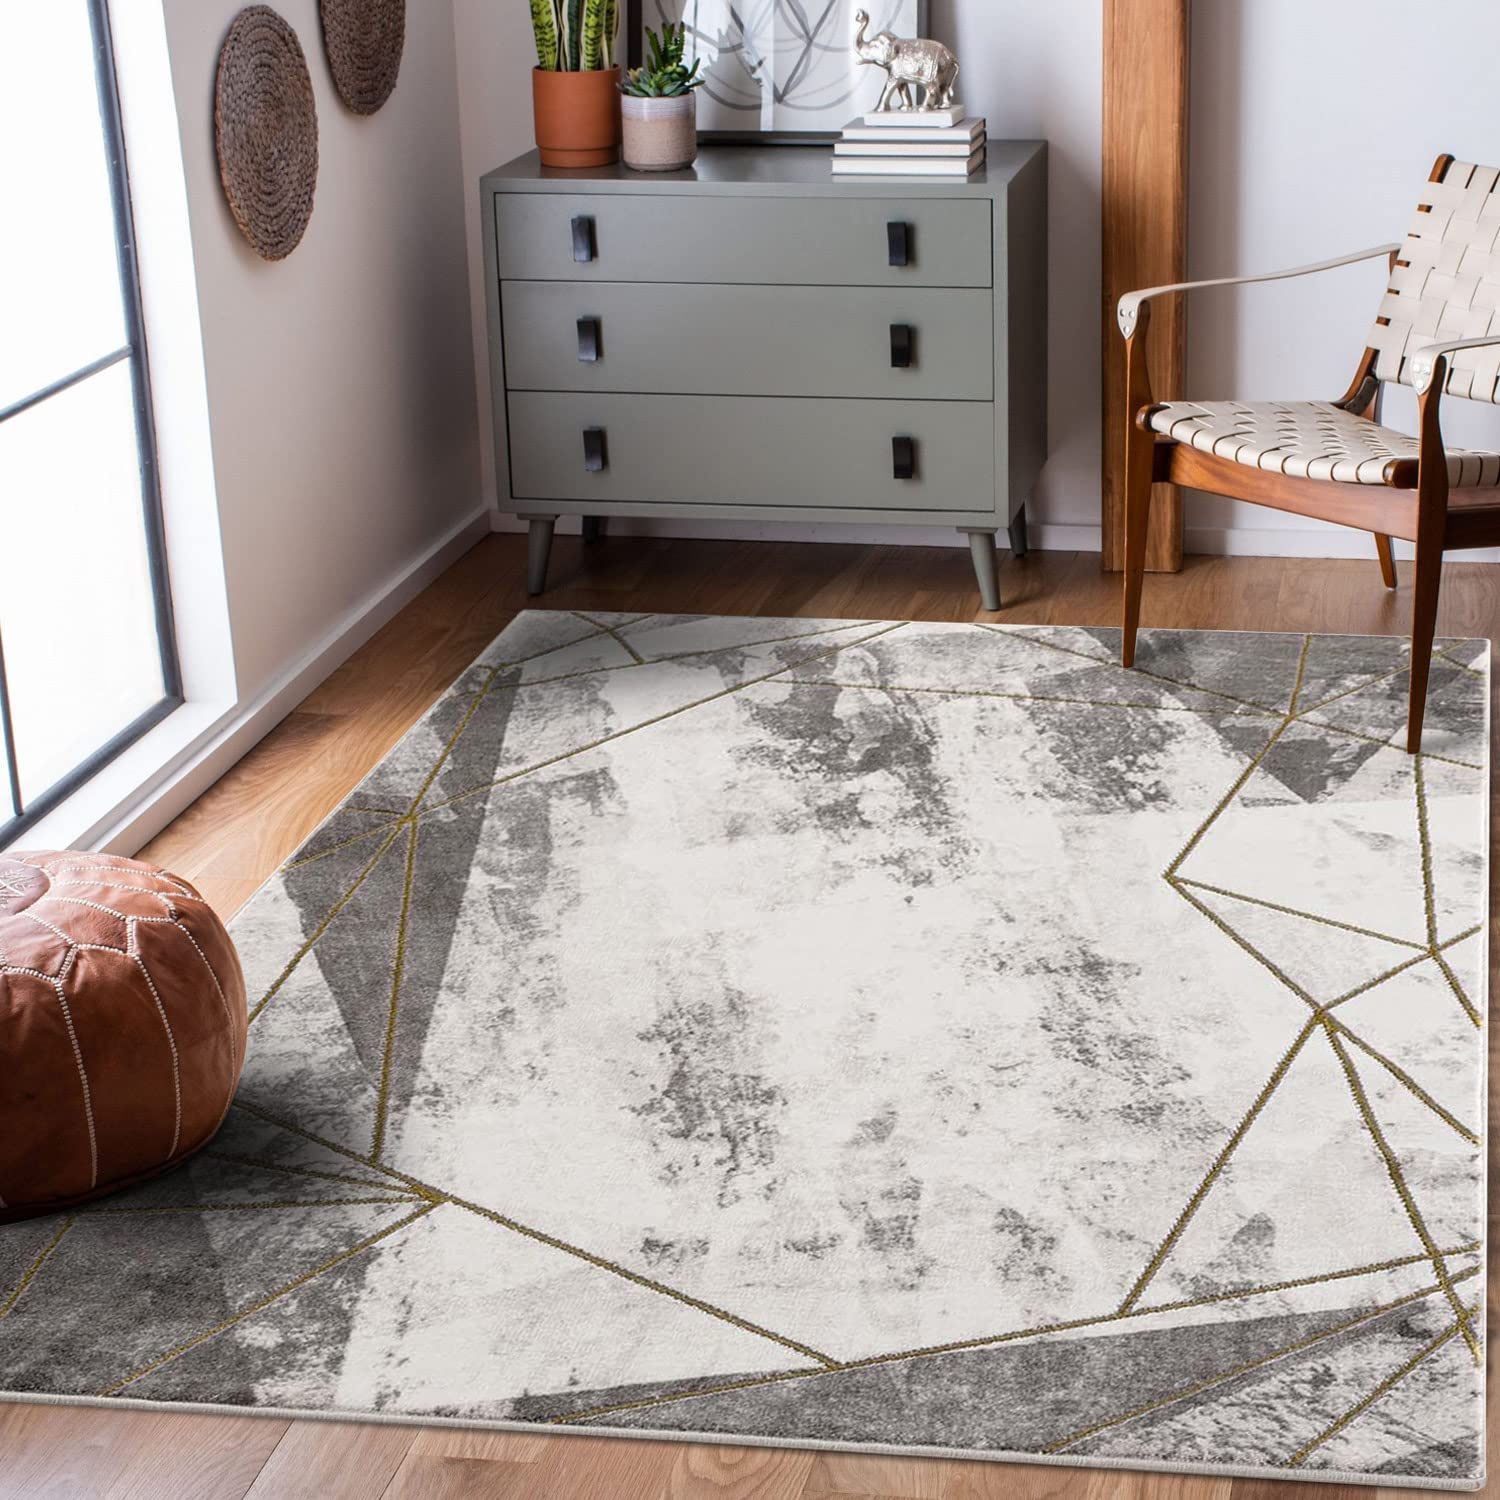 carpet city Teppich Läufer Wohnzimmer Abstraktes Muster - 80x300 cm Grau Golden Meliert - Moderne Teppiche Kurzflor